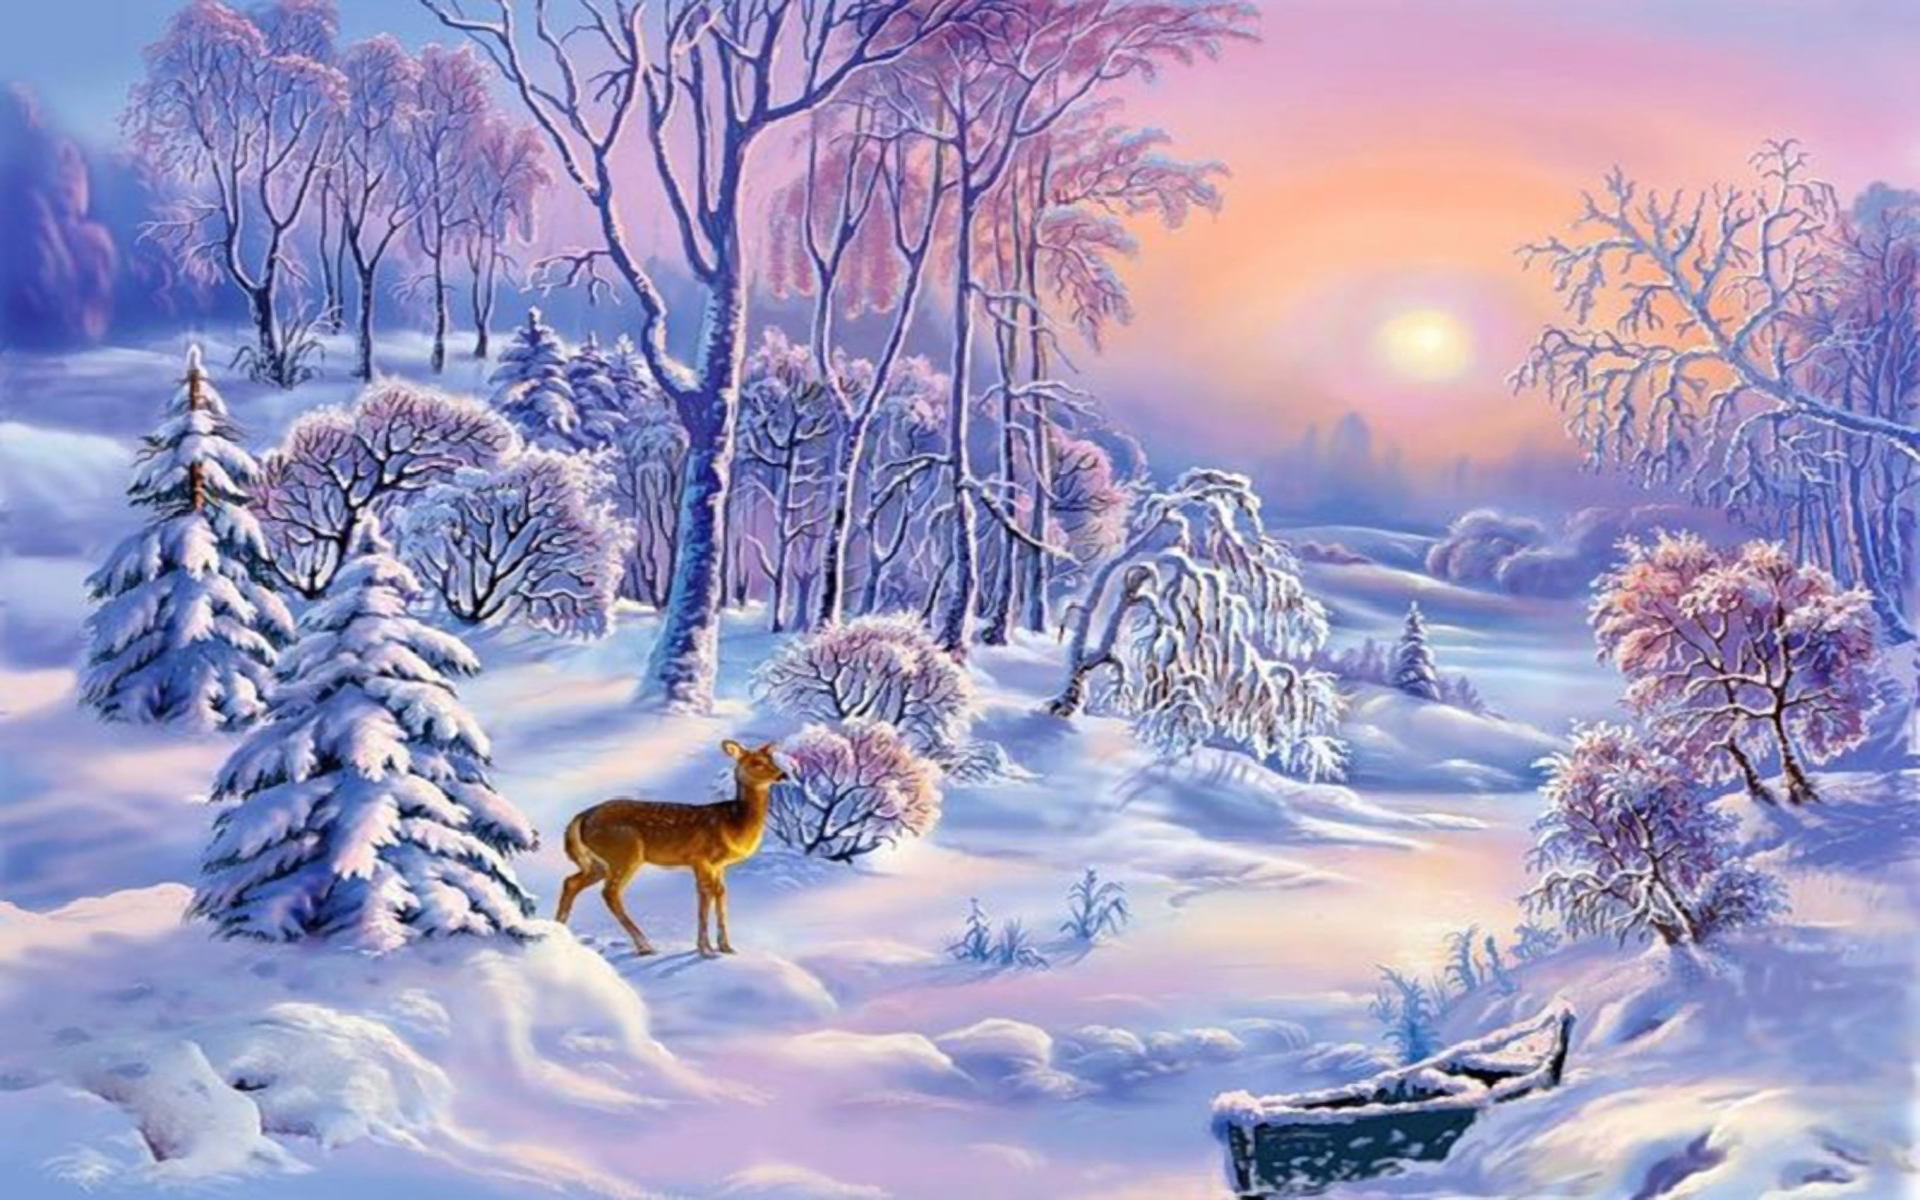 Скачать обои бесплатно Зима, Закат, Снег, Дерево, Олень, Ландшафт, Художественные картинка на рабочий стол ПК